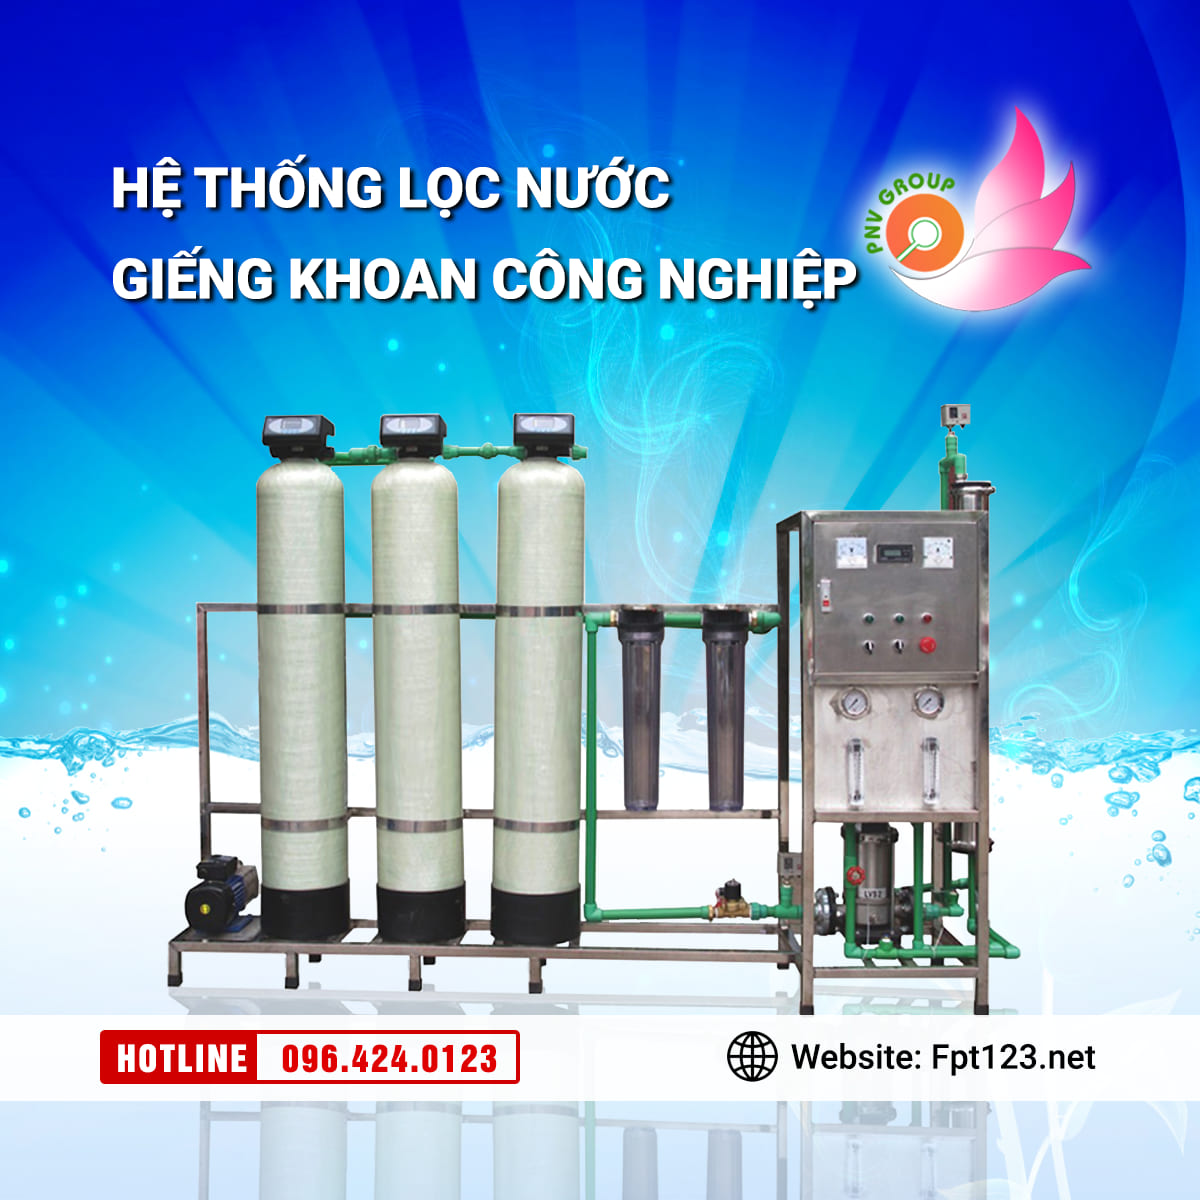 Lắp đặt hệ thống lọc nước giếng khoan ở Phú Xuyên, Hà Nội